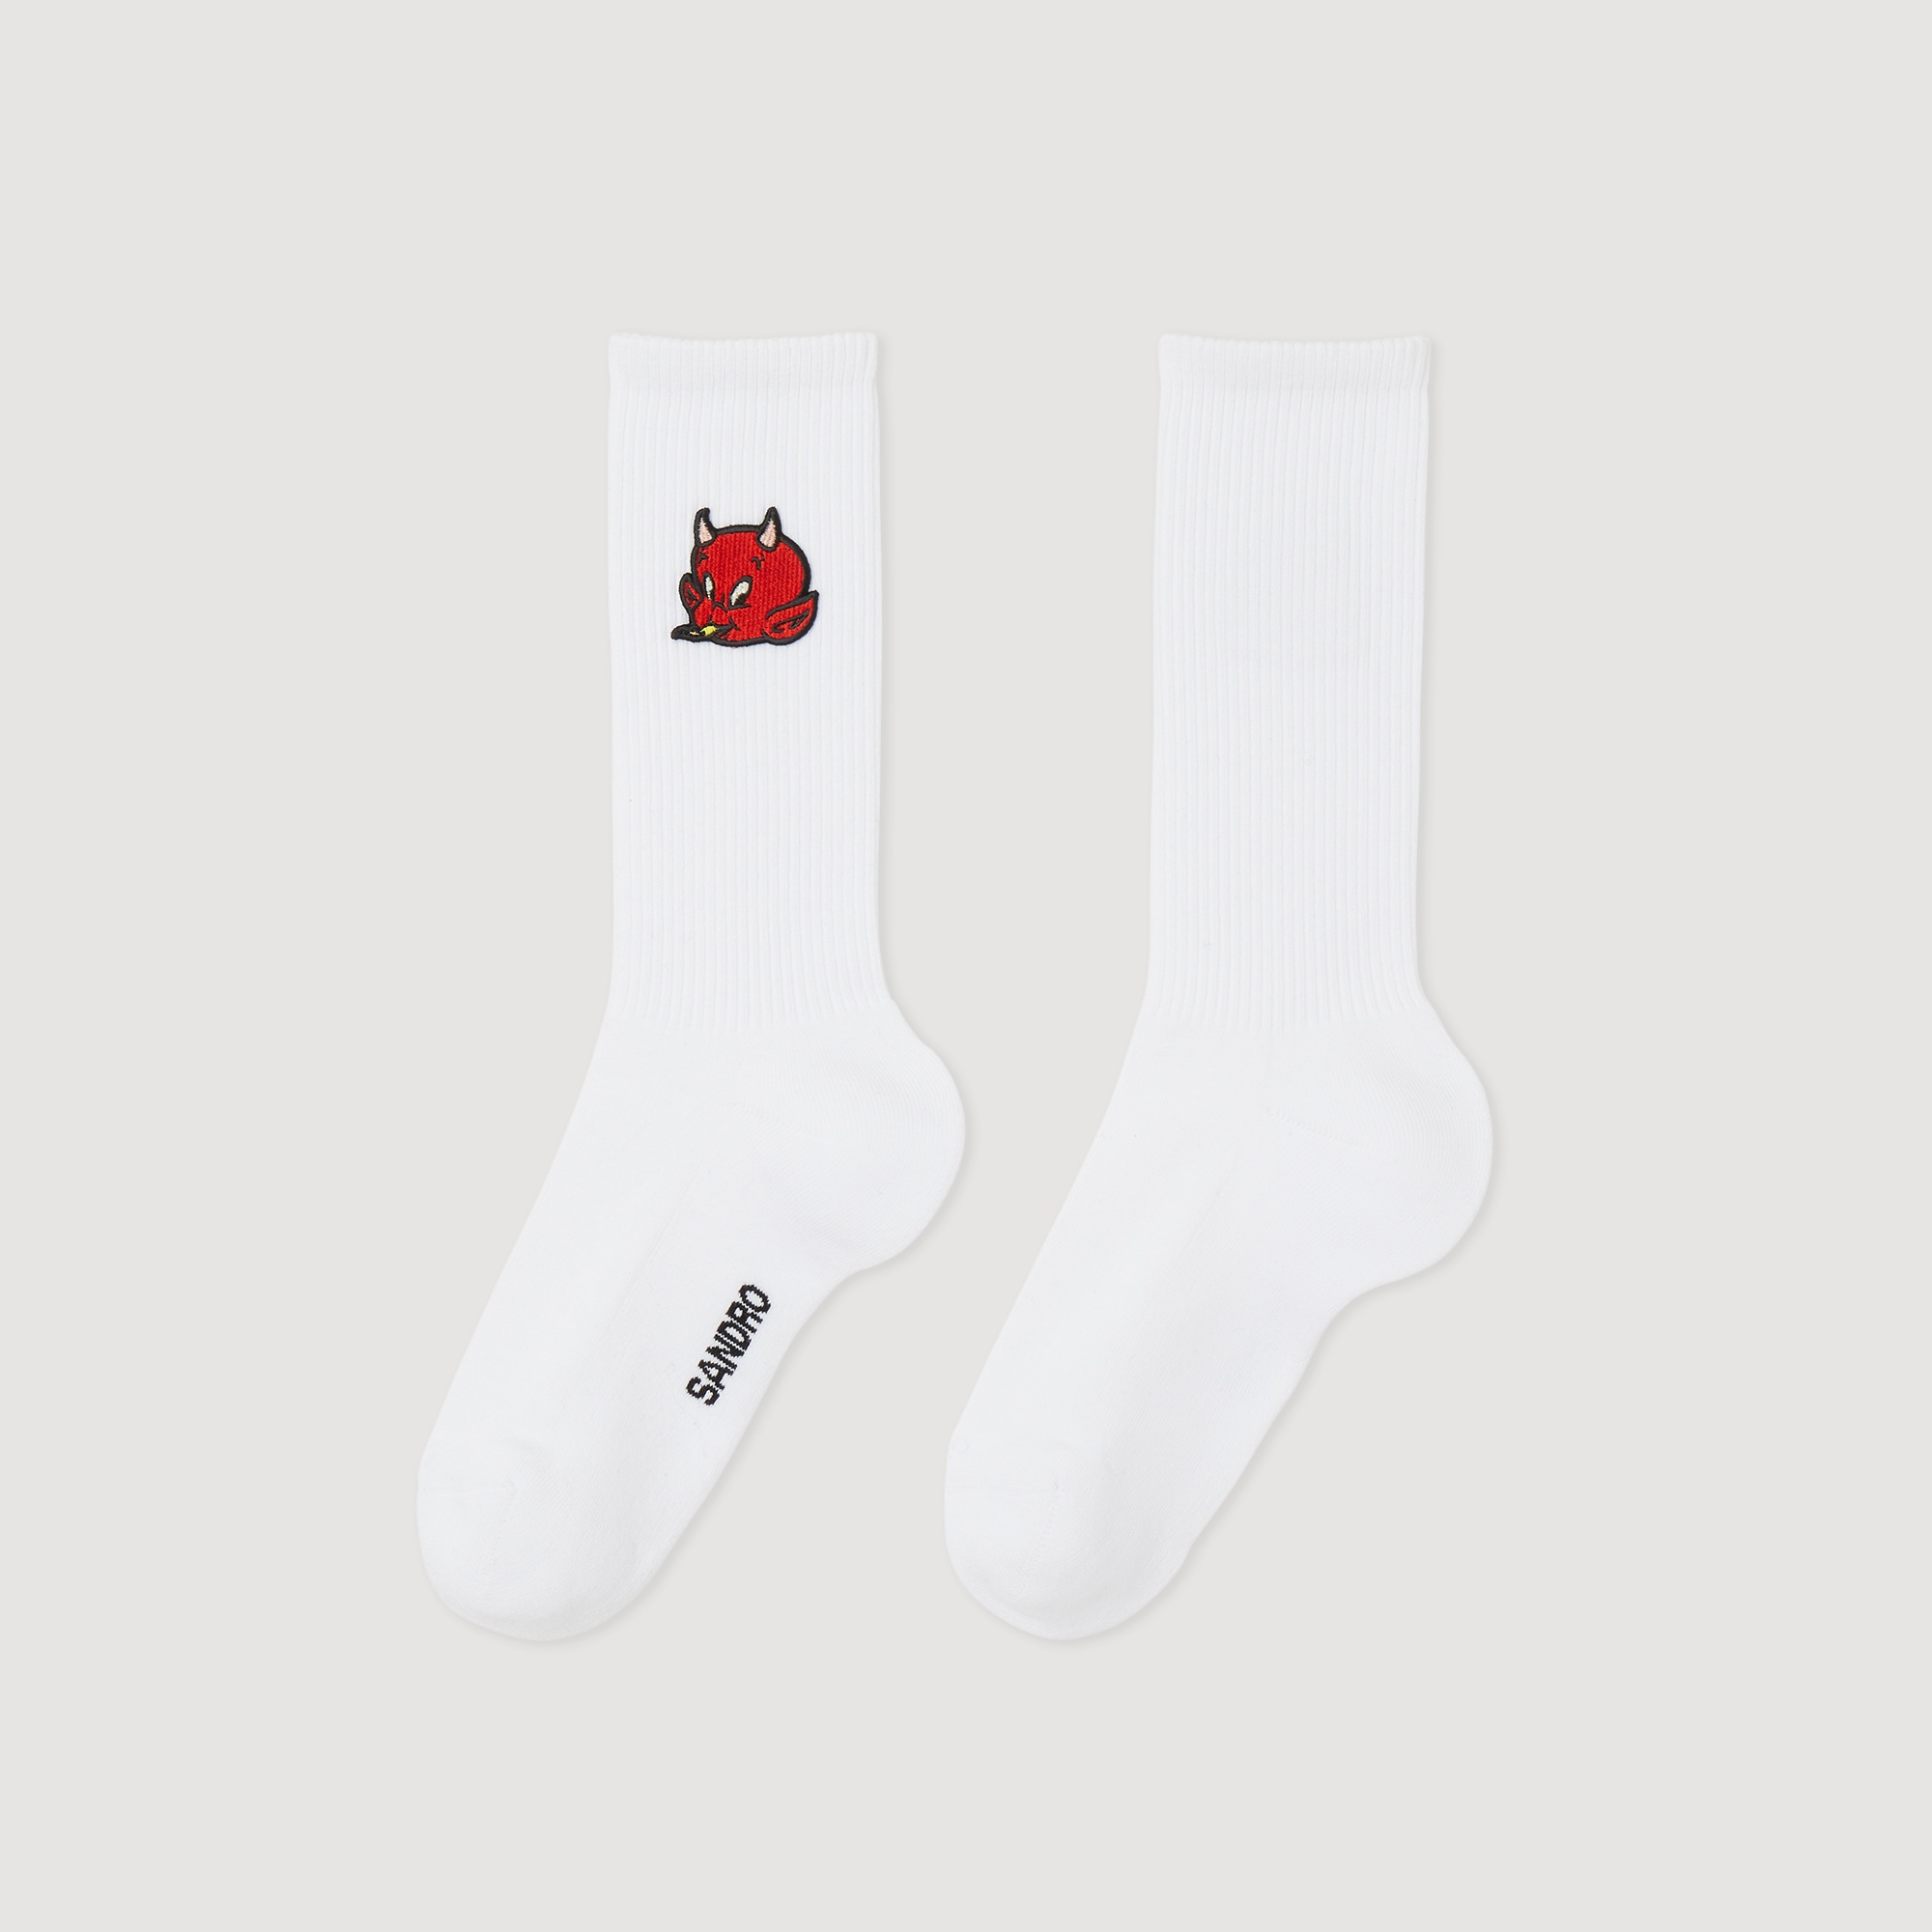 Hot Stuff socks - 1